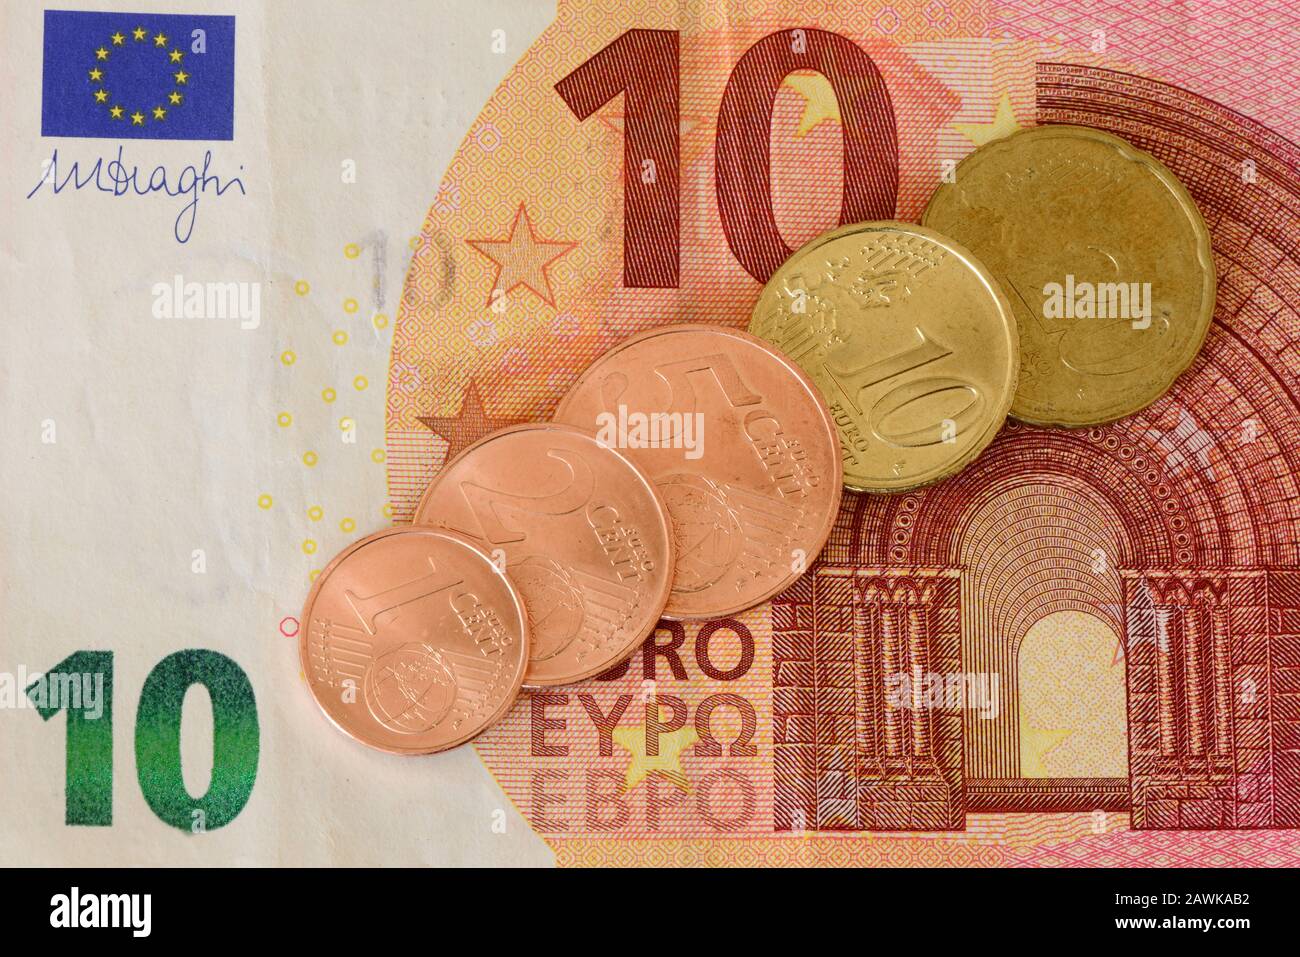 Secondo le relazioni dei media, la nuova Commissione europea prevede di abolire le monete da cent. Foto Stock